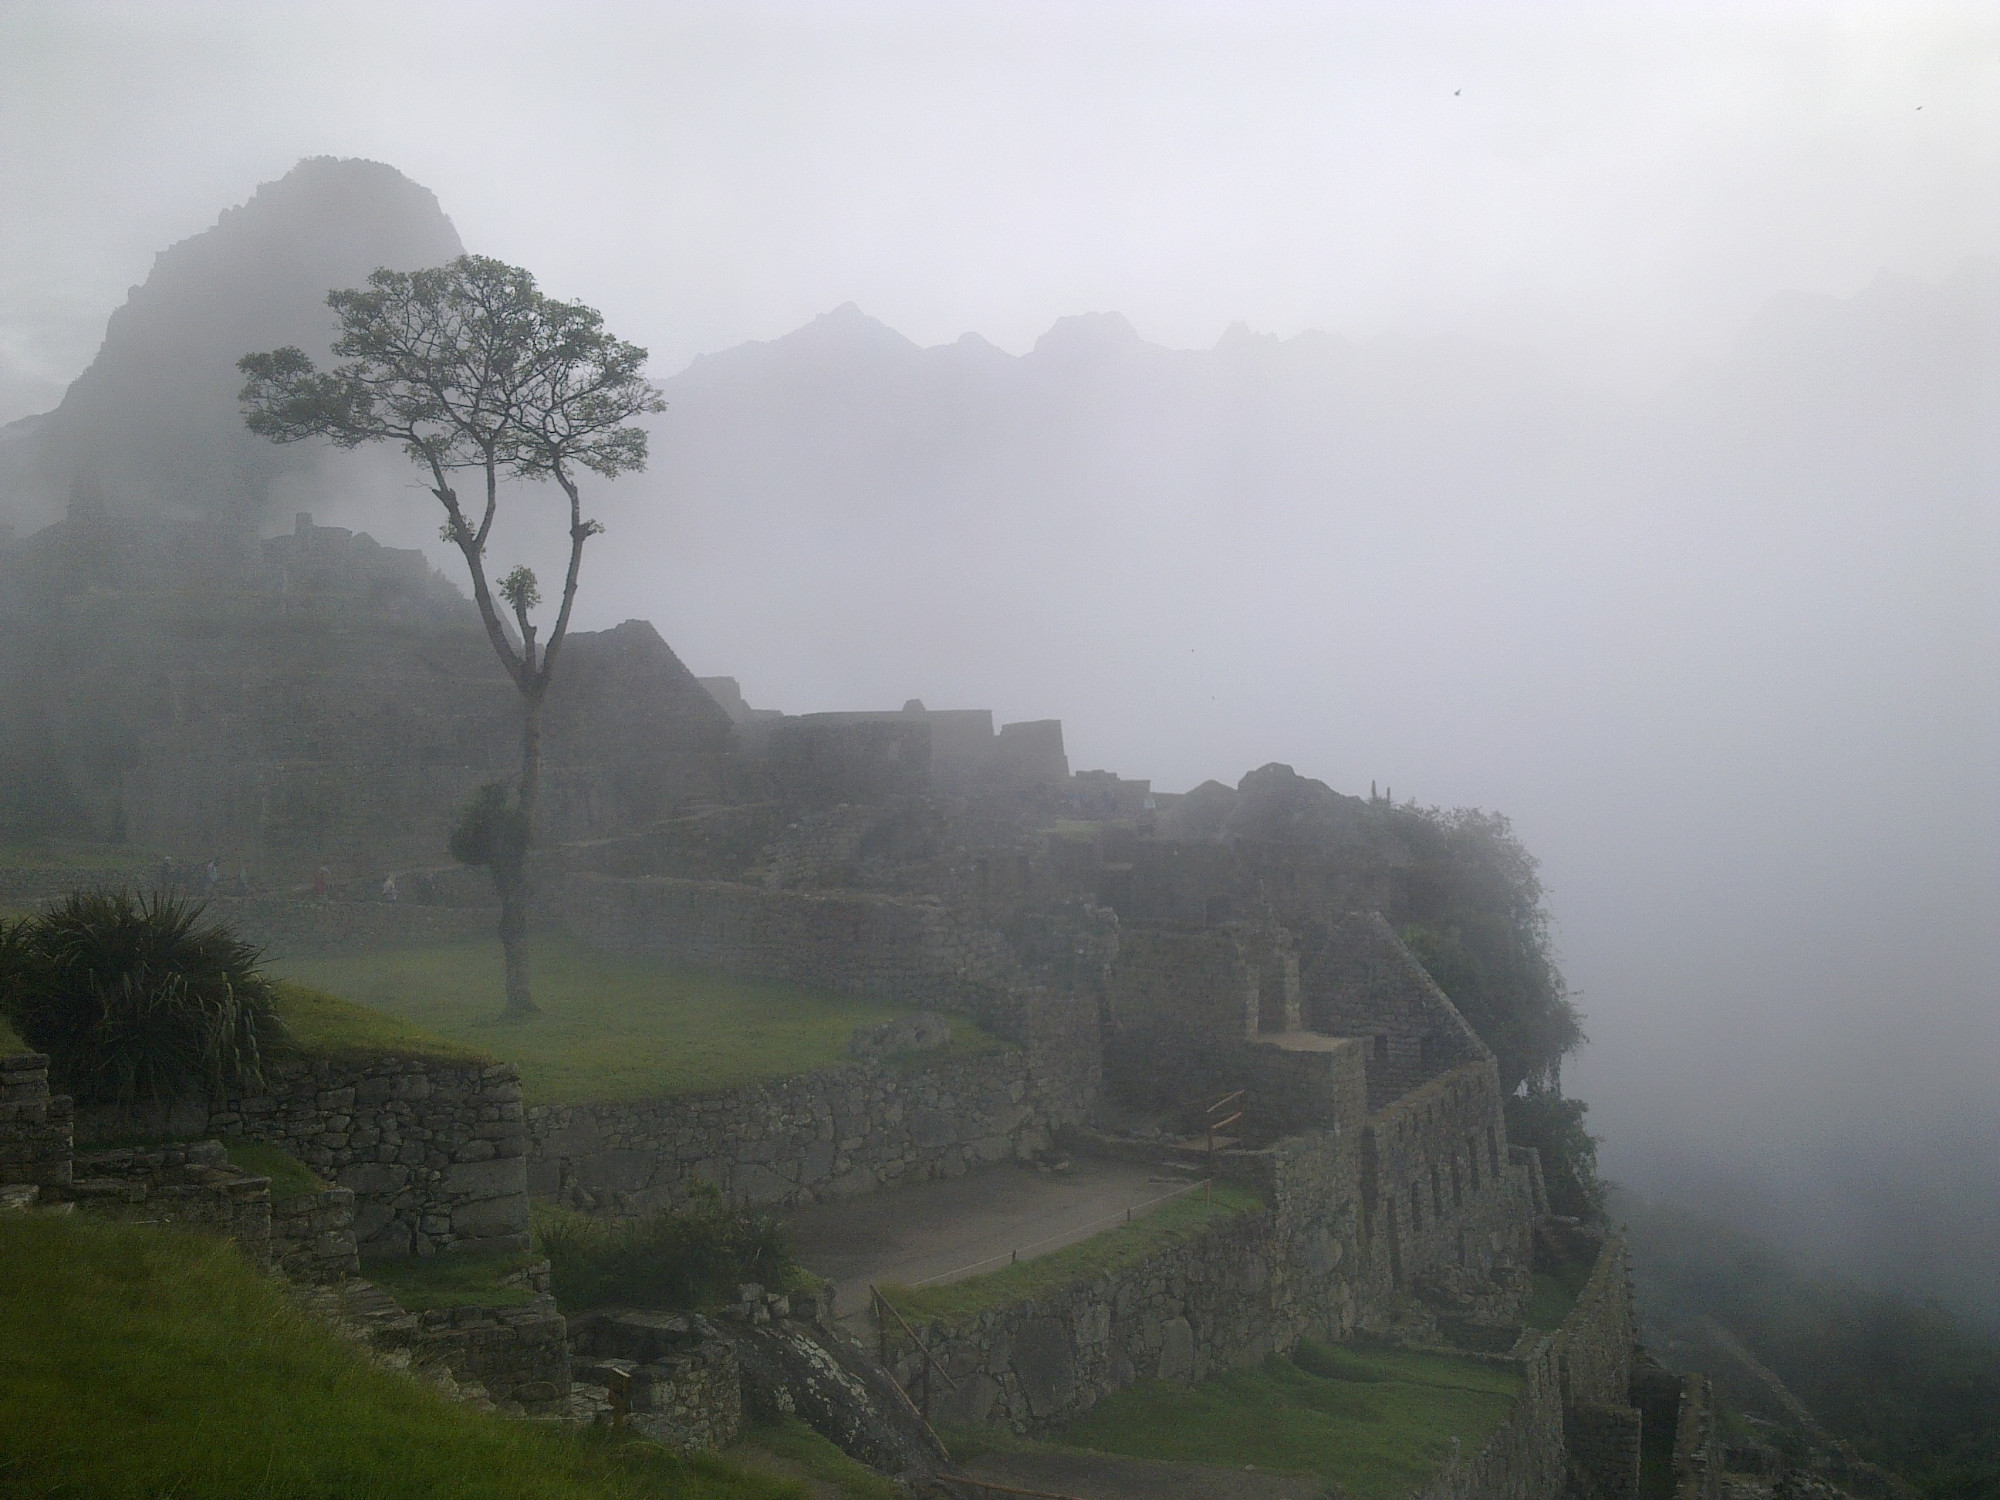 Machu Picchu in fog (Peru)